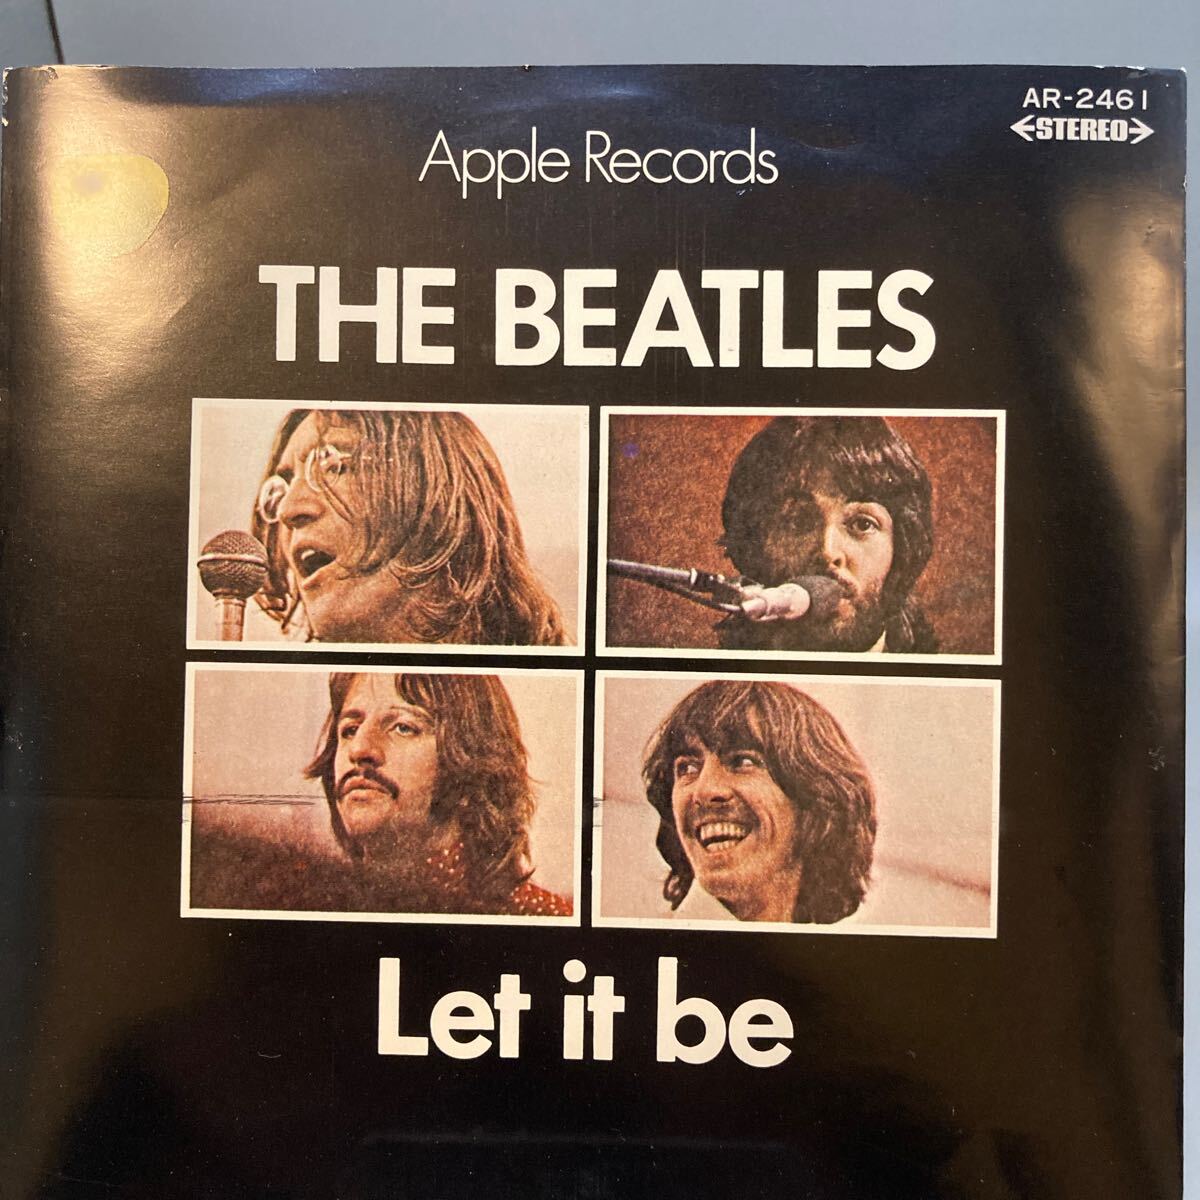 再生良好 EP THE BEATLES - LET IT BE / Apple Records AR-2461の画像1